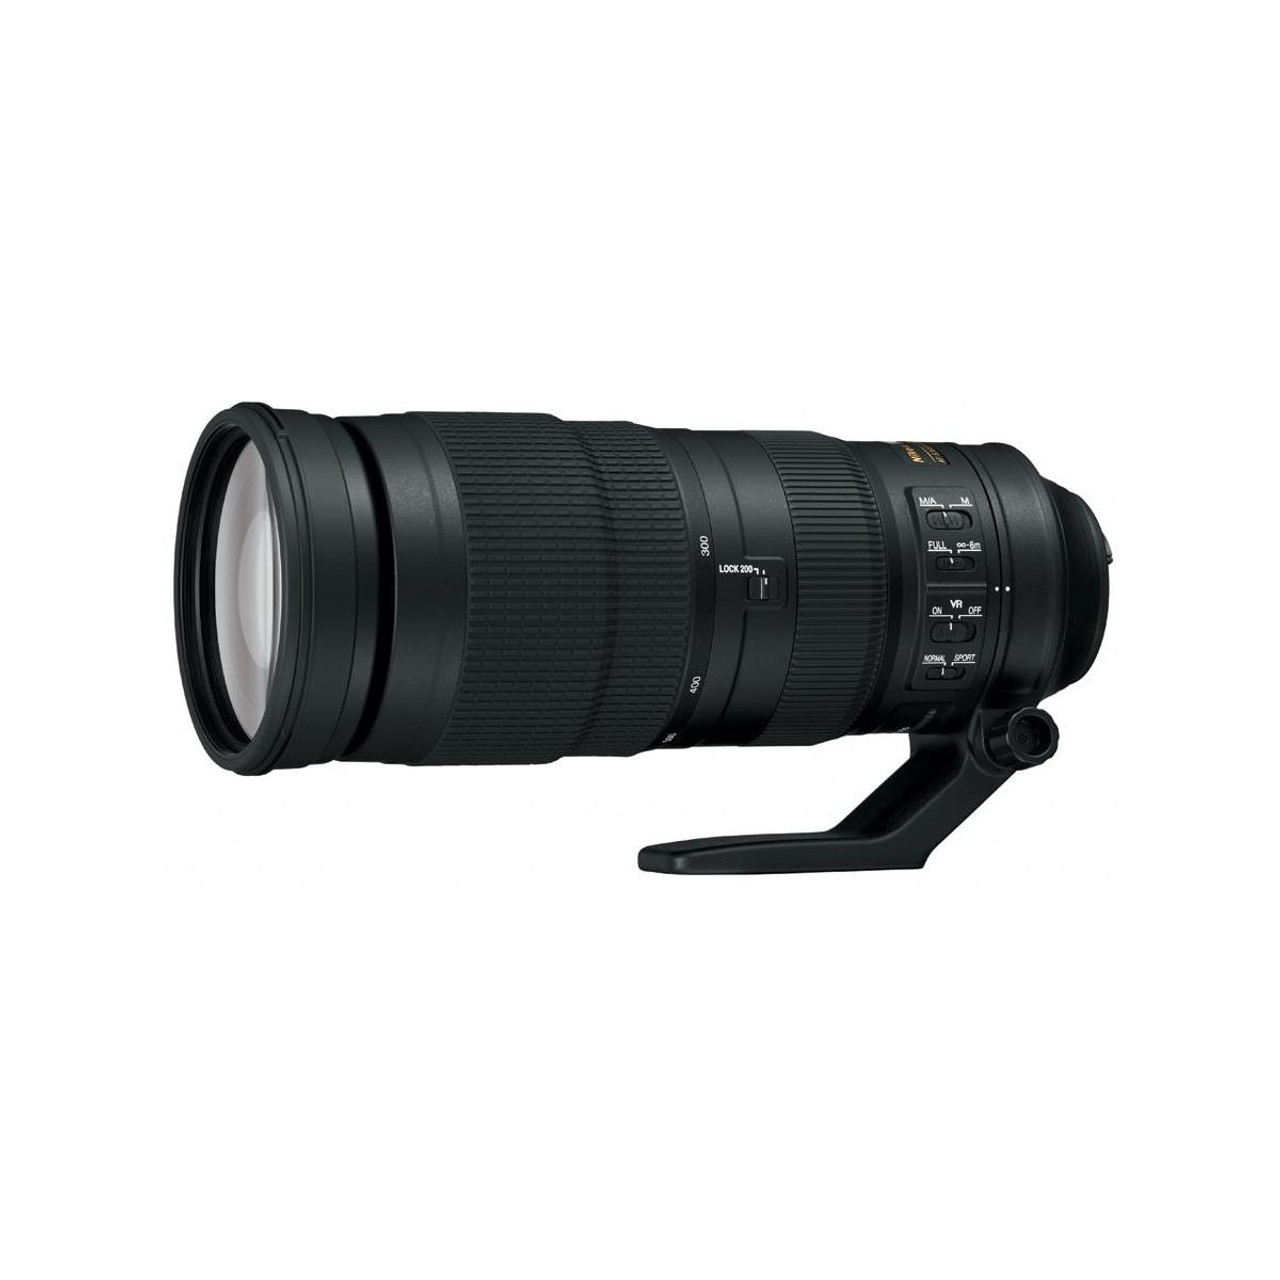 Nikon 200-500mm f/5.6E ED AF-S VR Zoom Nikkor Lens